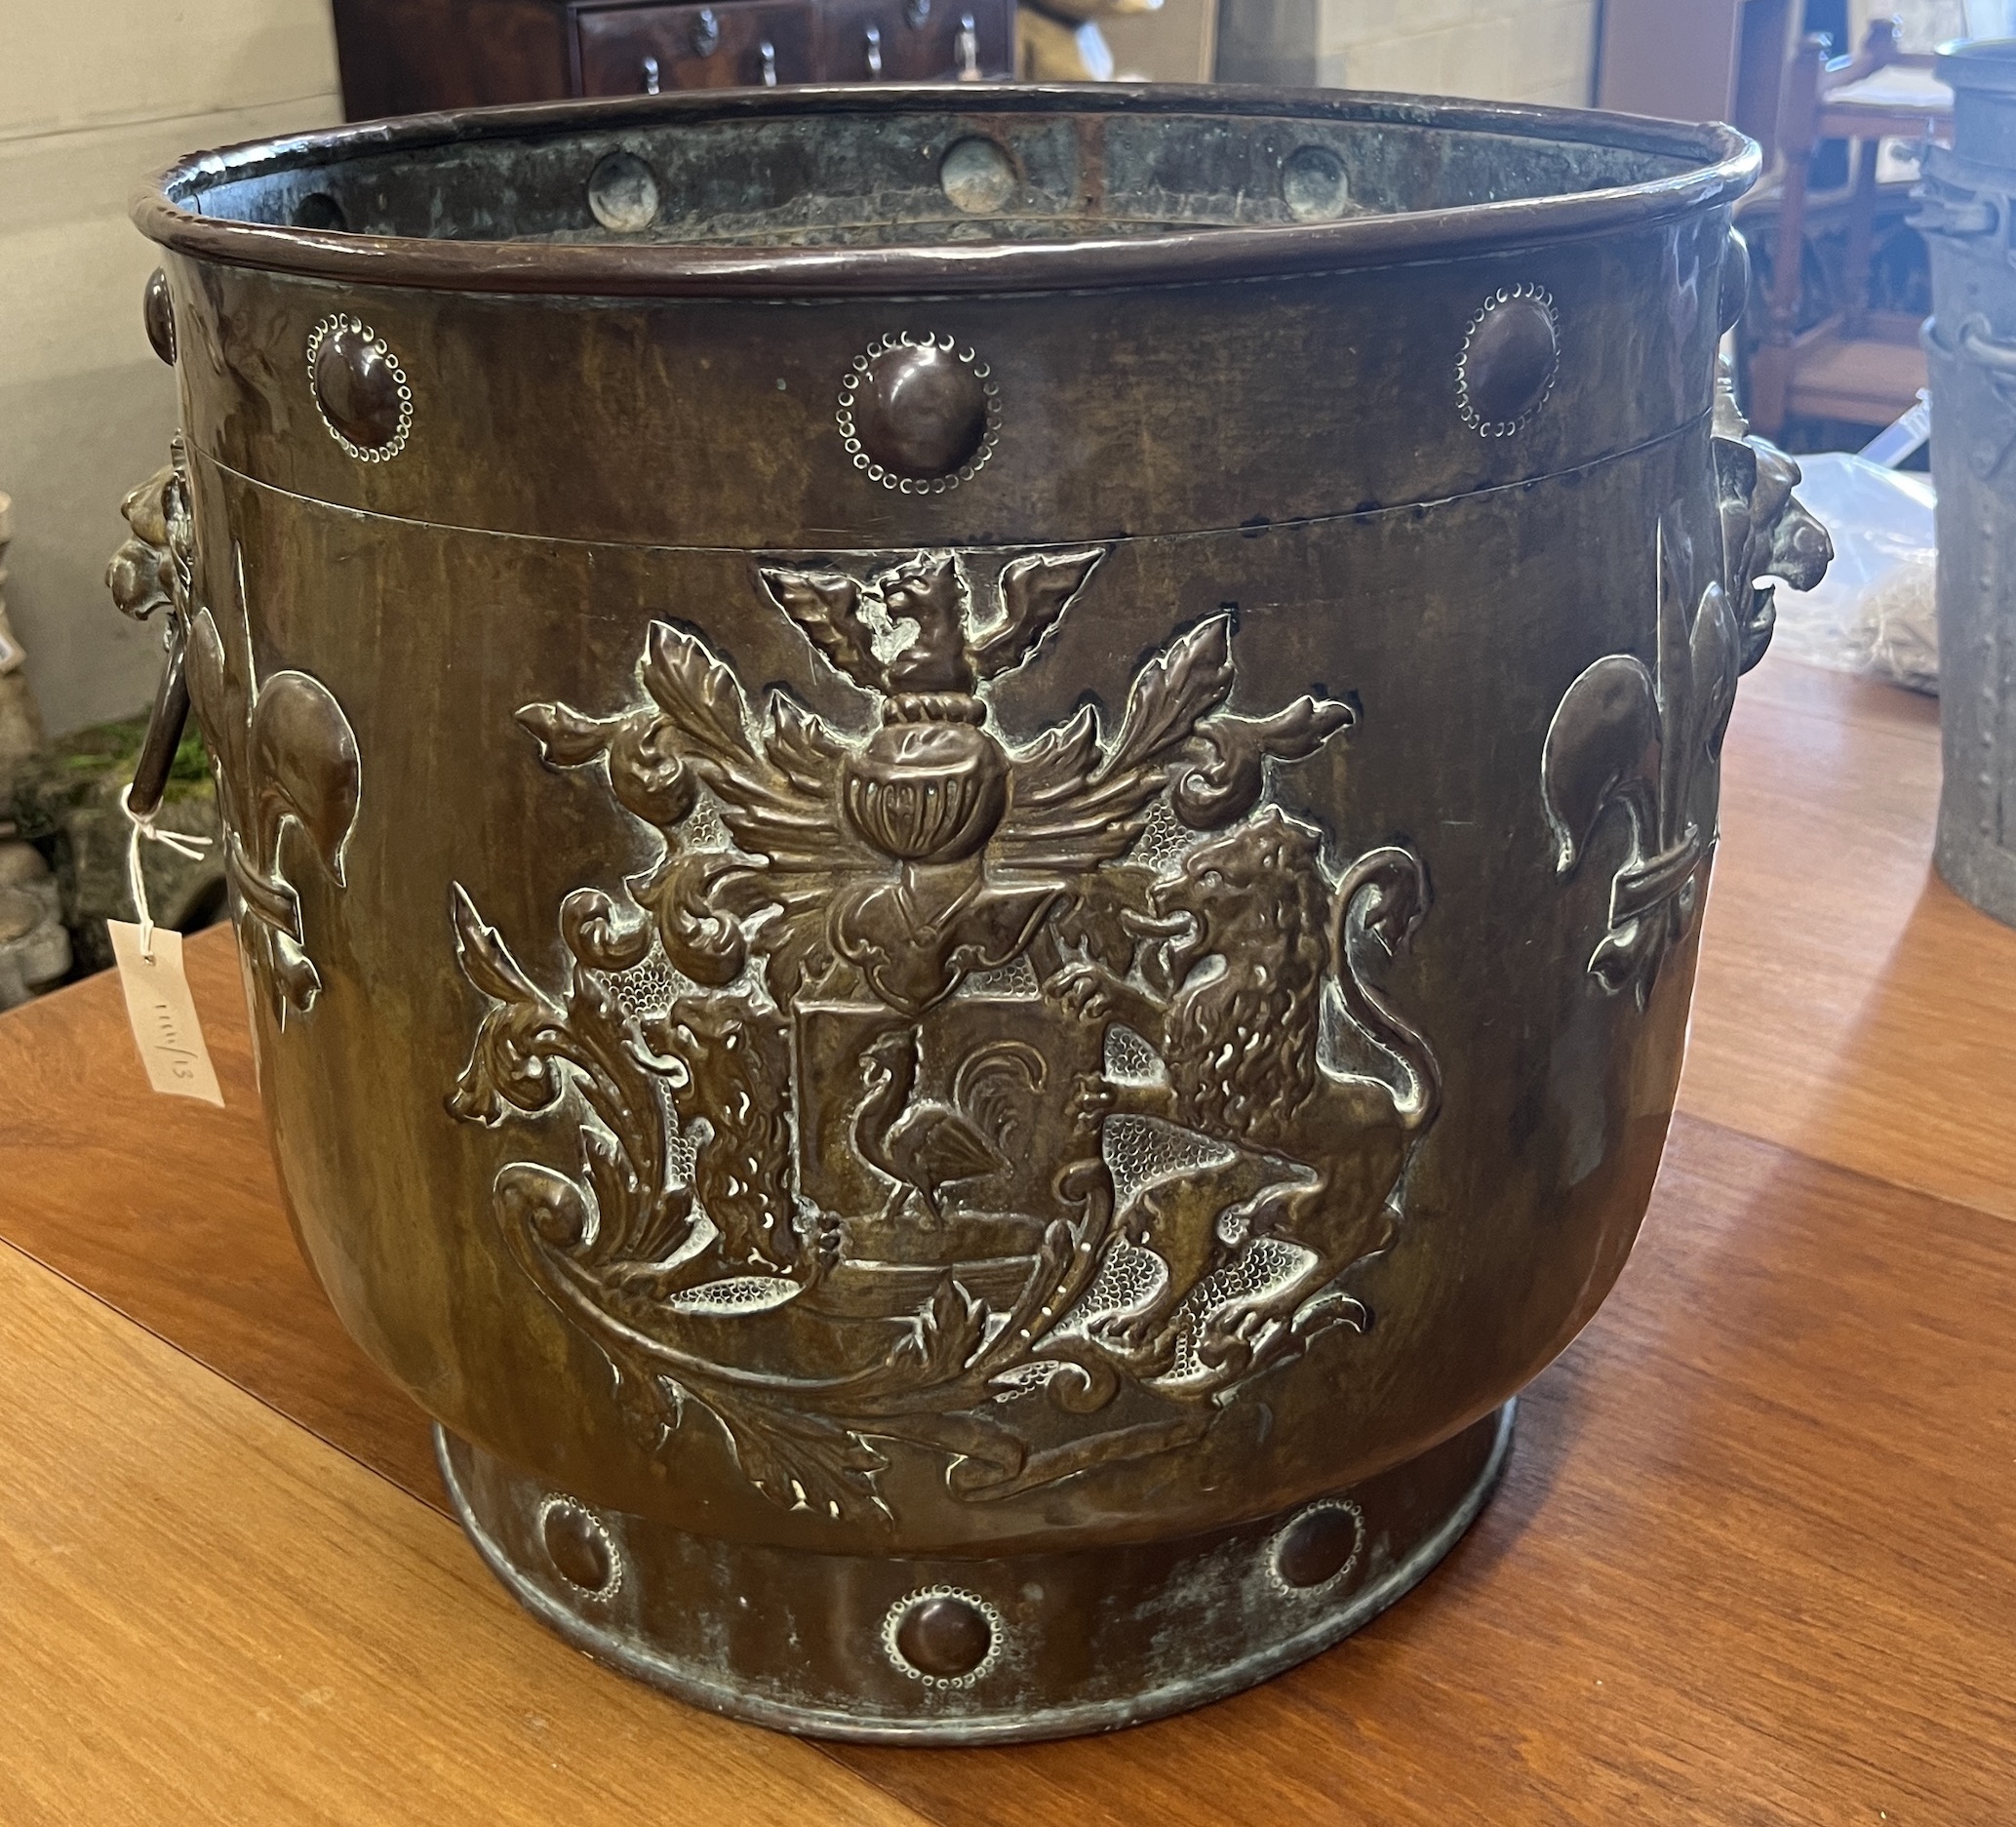 A 19th century Dutch embossed copper coal bin, diameter 49cm, height 45cm